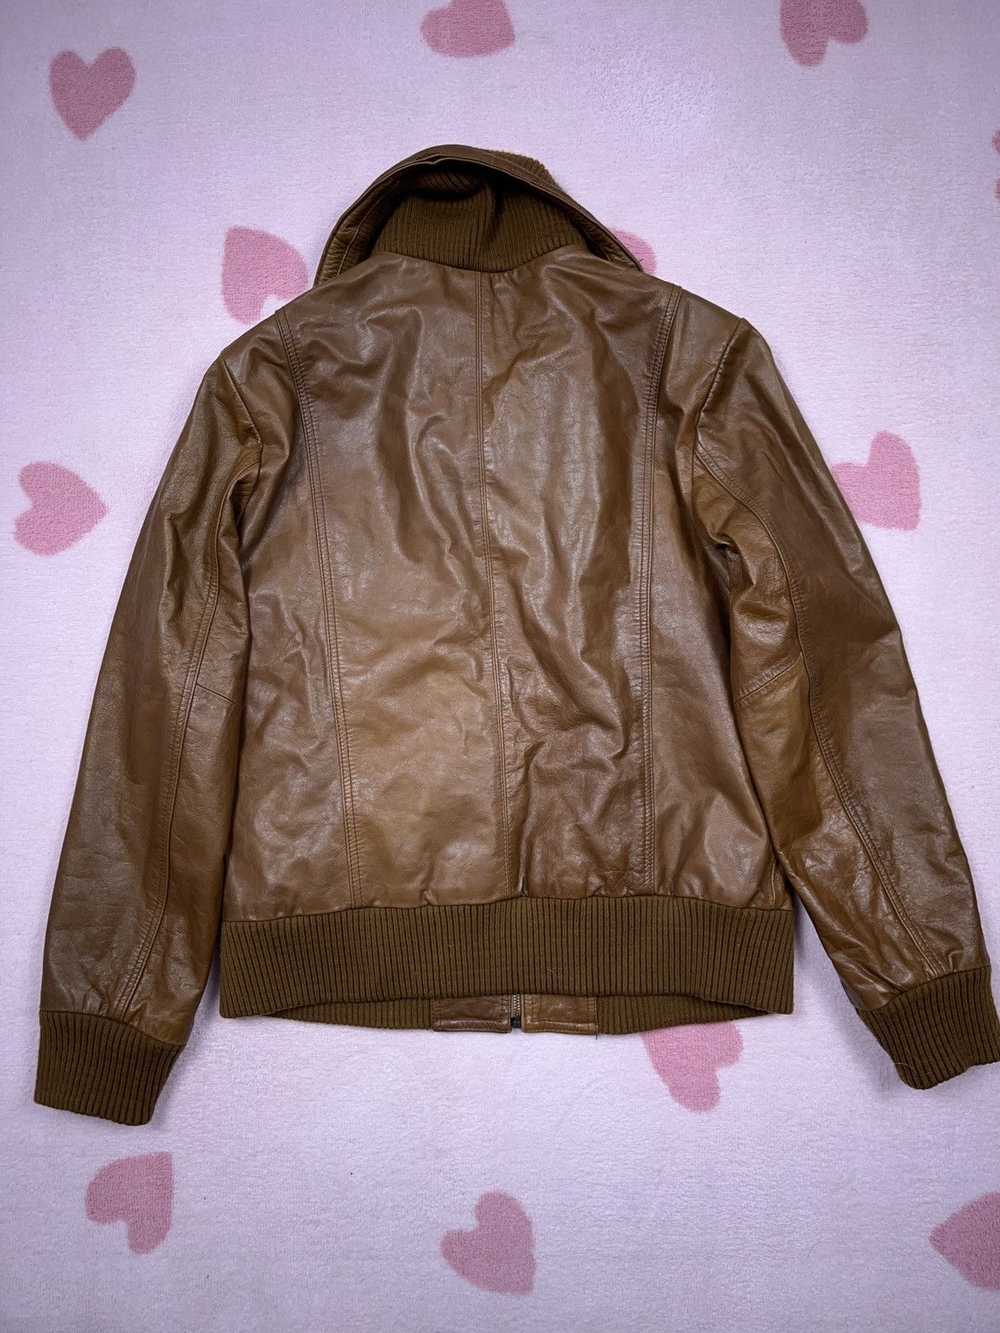 Avant Garde × Genuine Leather × Vintage ➕ brown b… - image 3